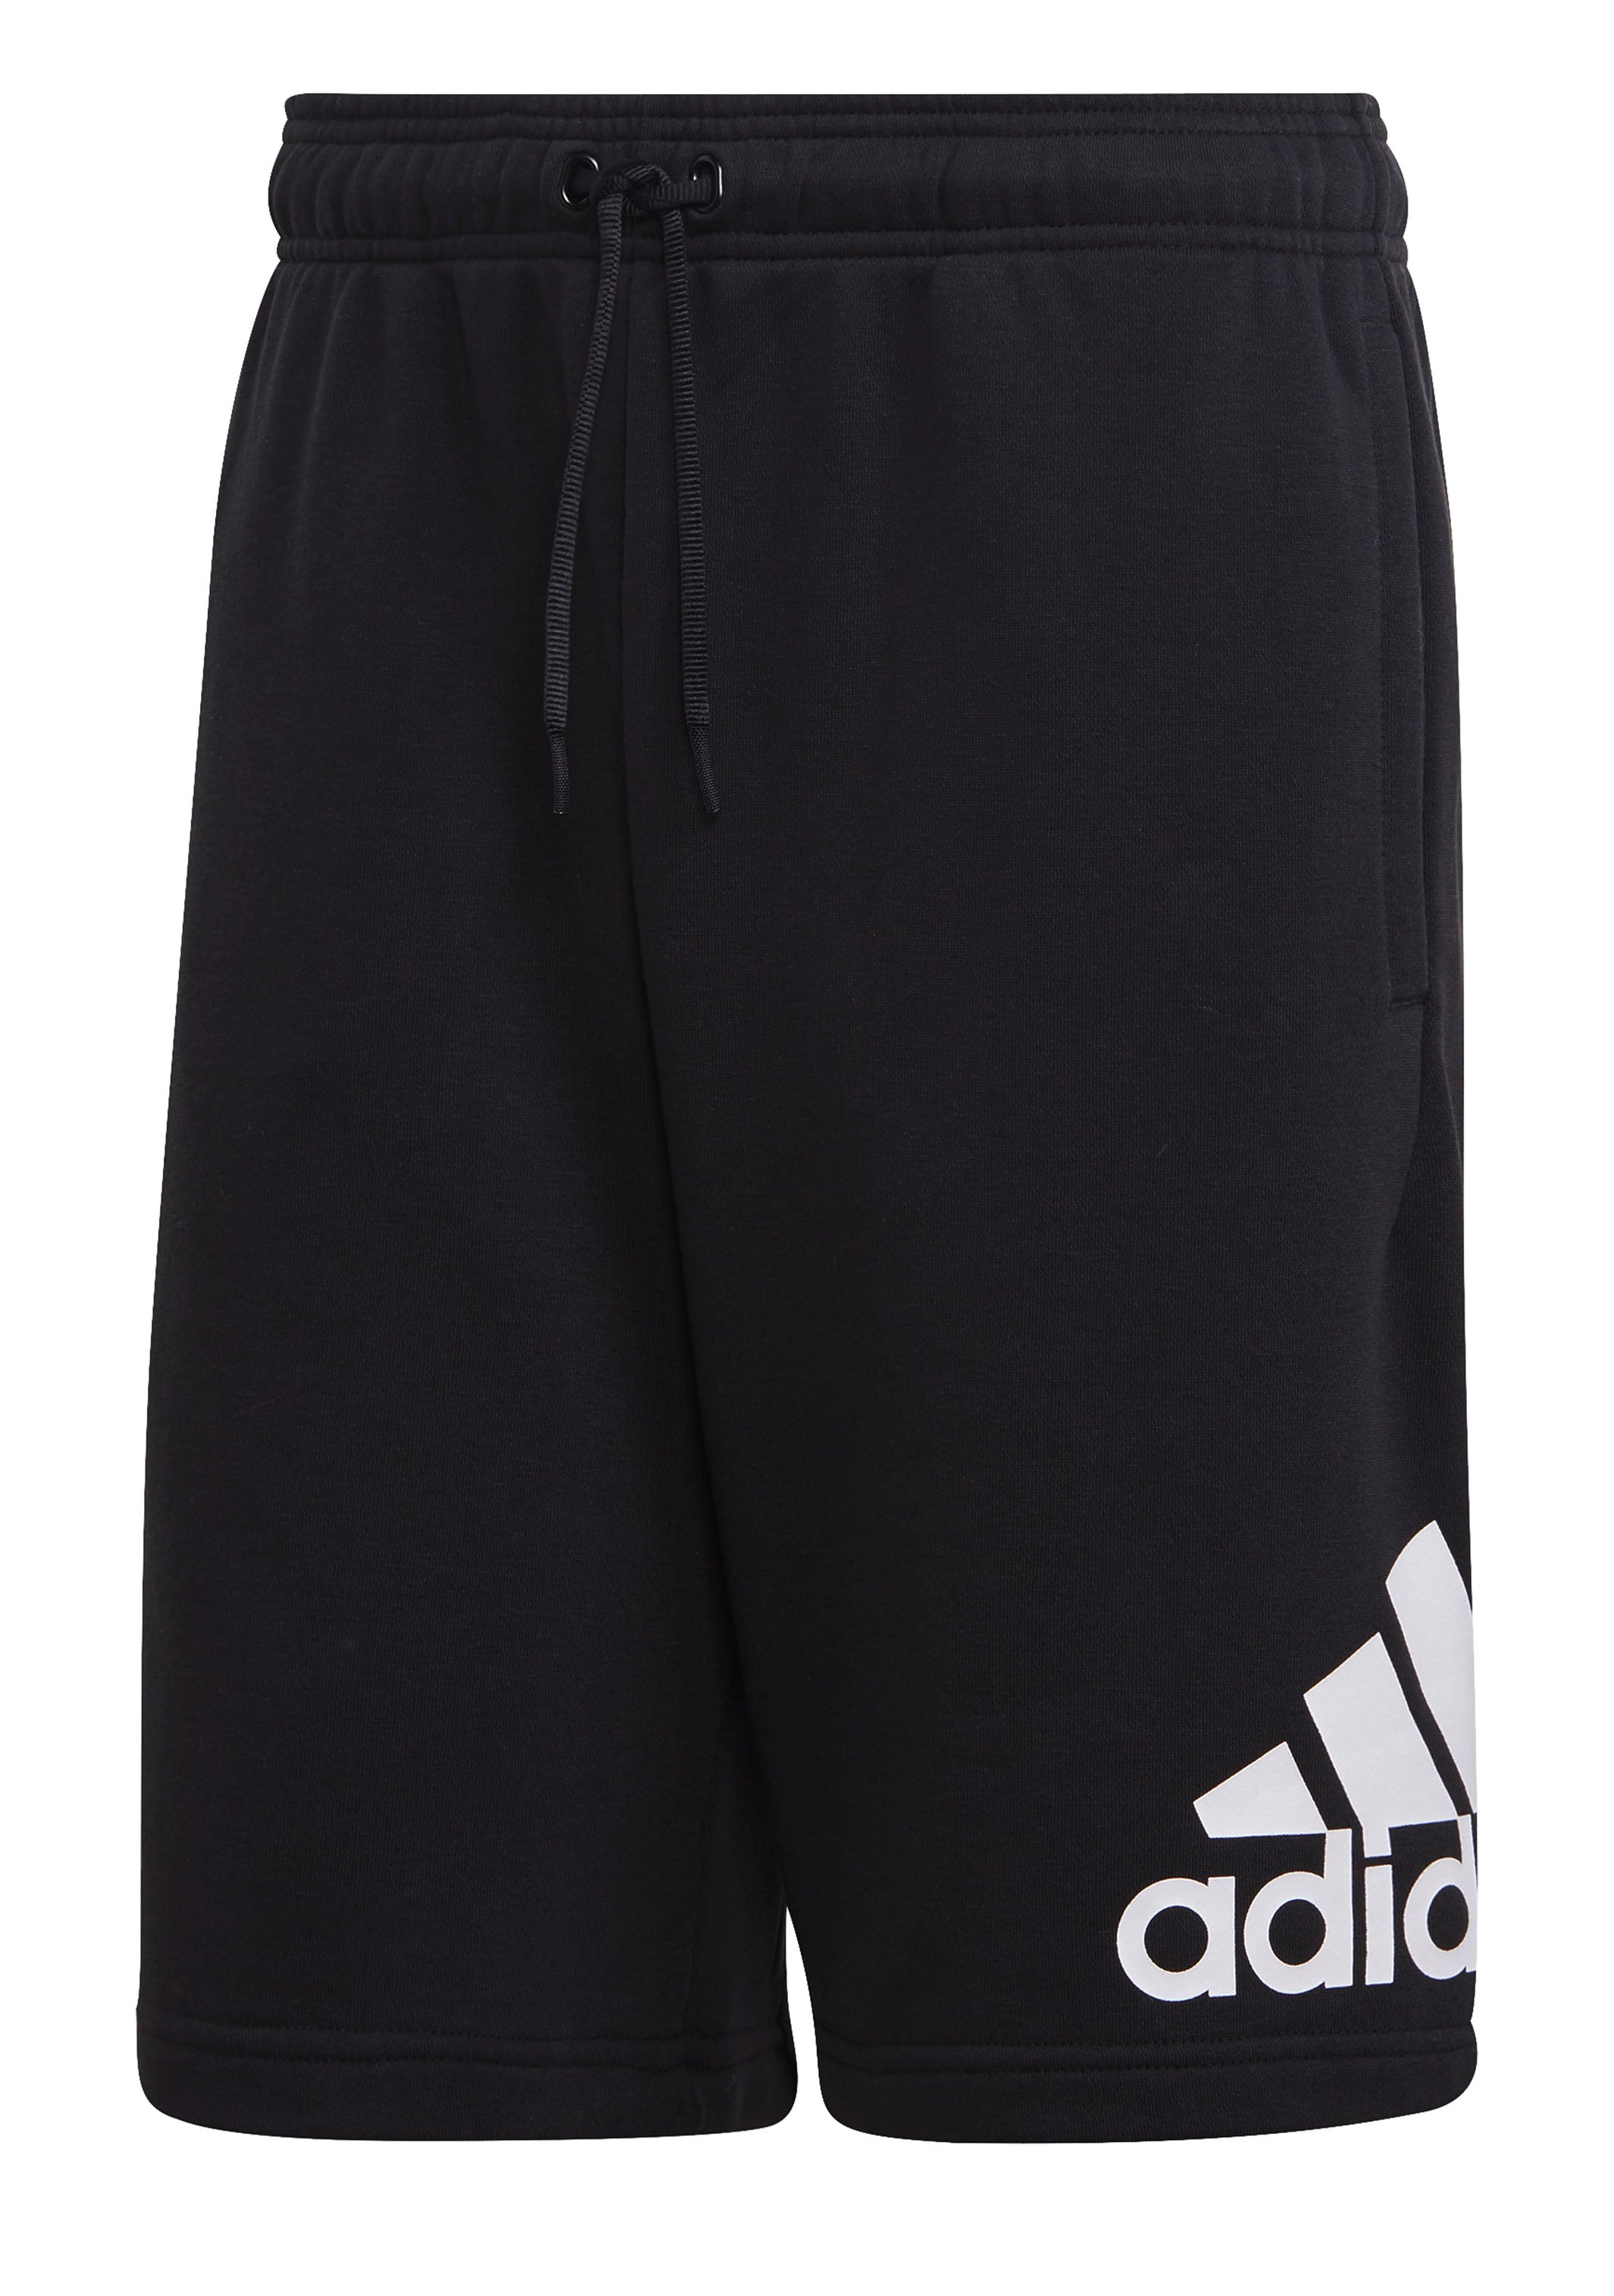 Adidas Mens Badge of Shorts DX7662 – Jim Kidd Sports